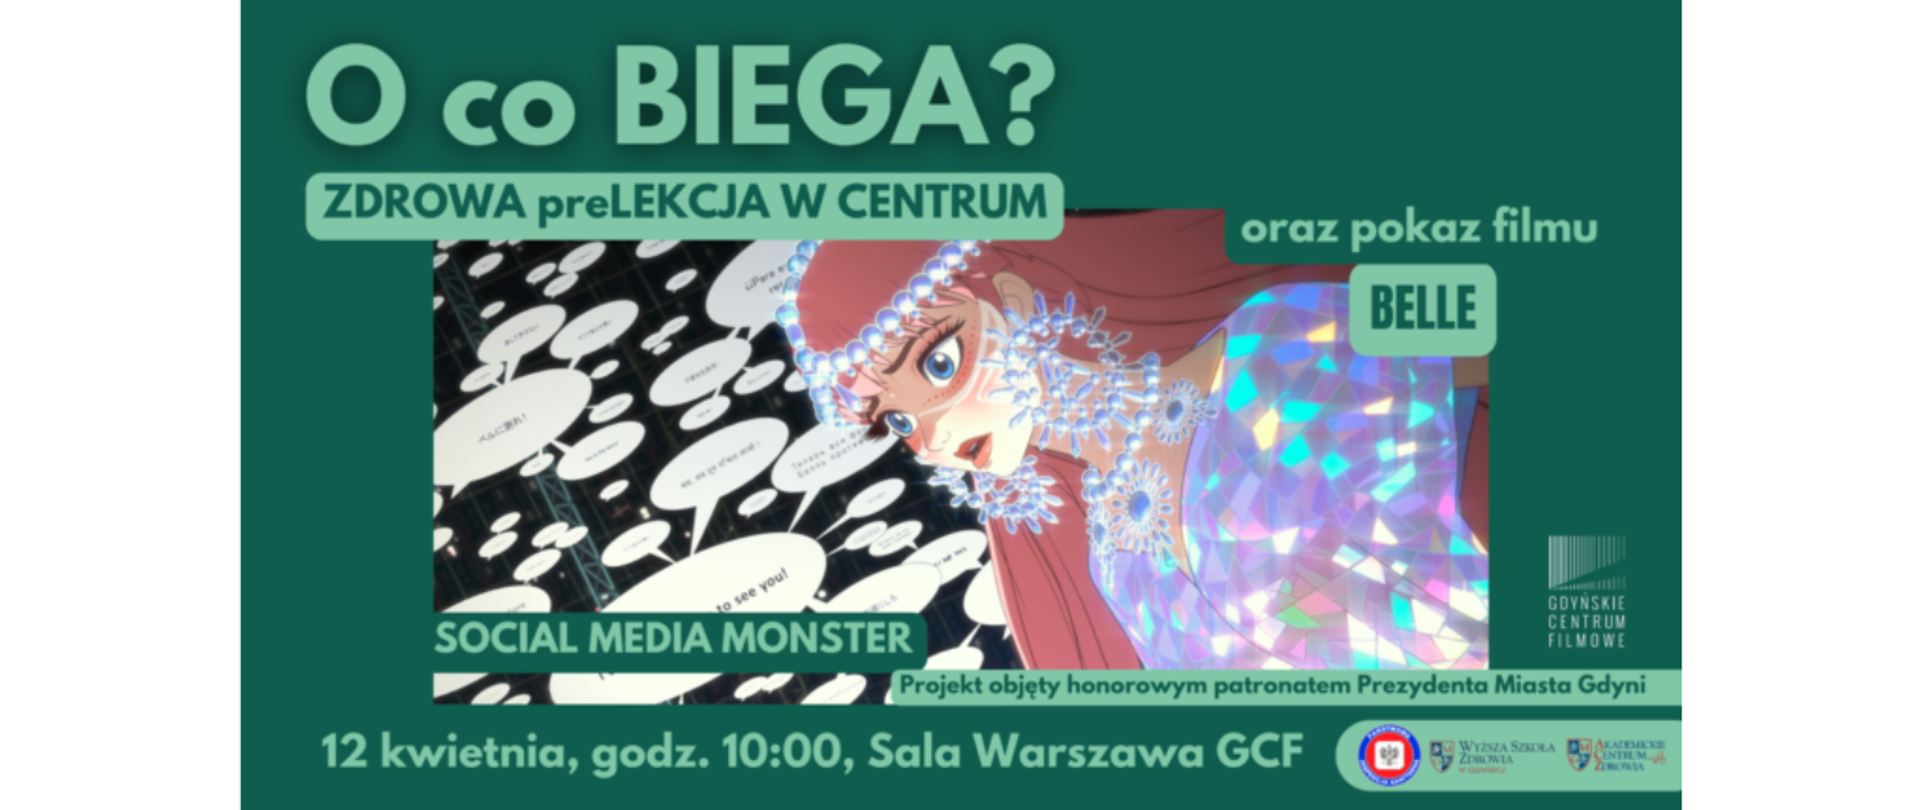 Plakat informujący o wydarzeniu O co BIEGA w Gdyńskim Centrum Filmowym